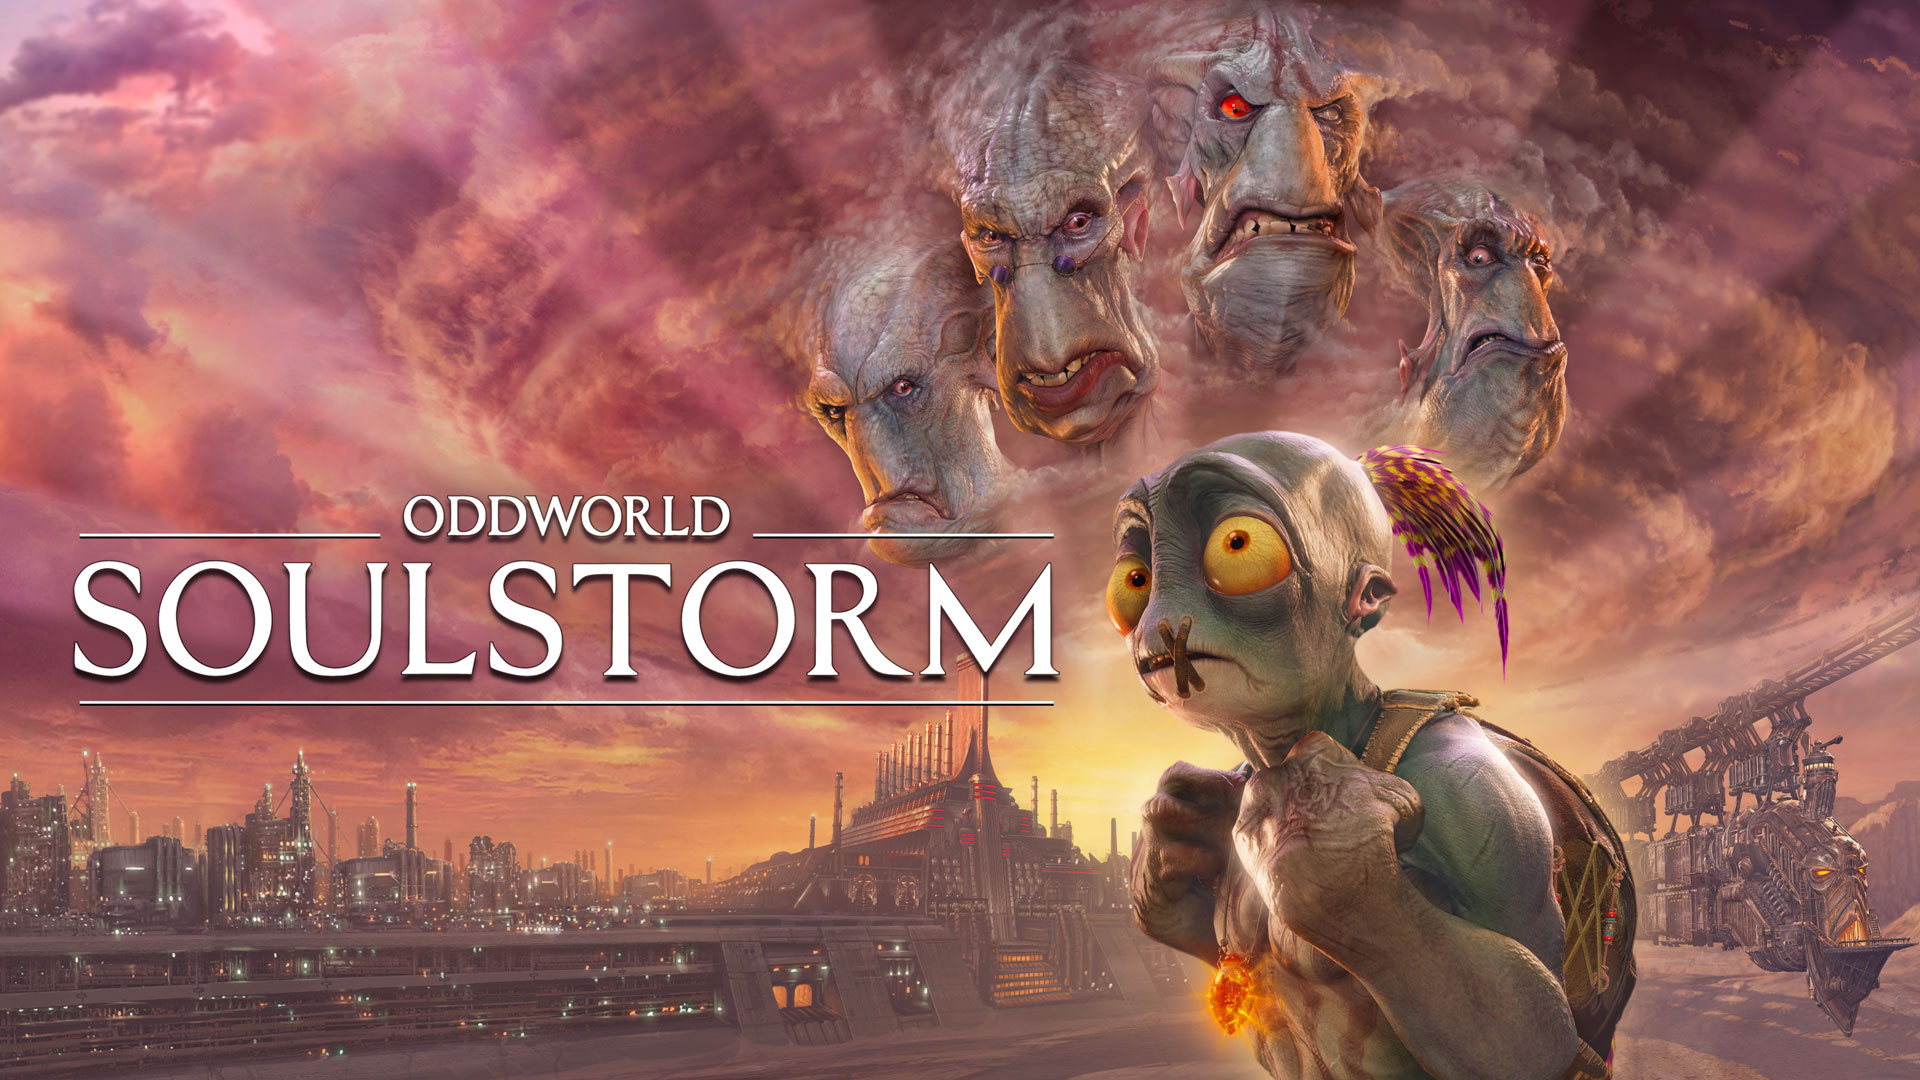 Oddworld Soulstorm Release Date